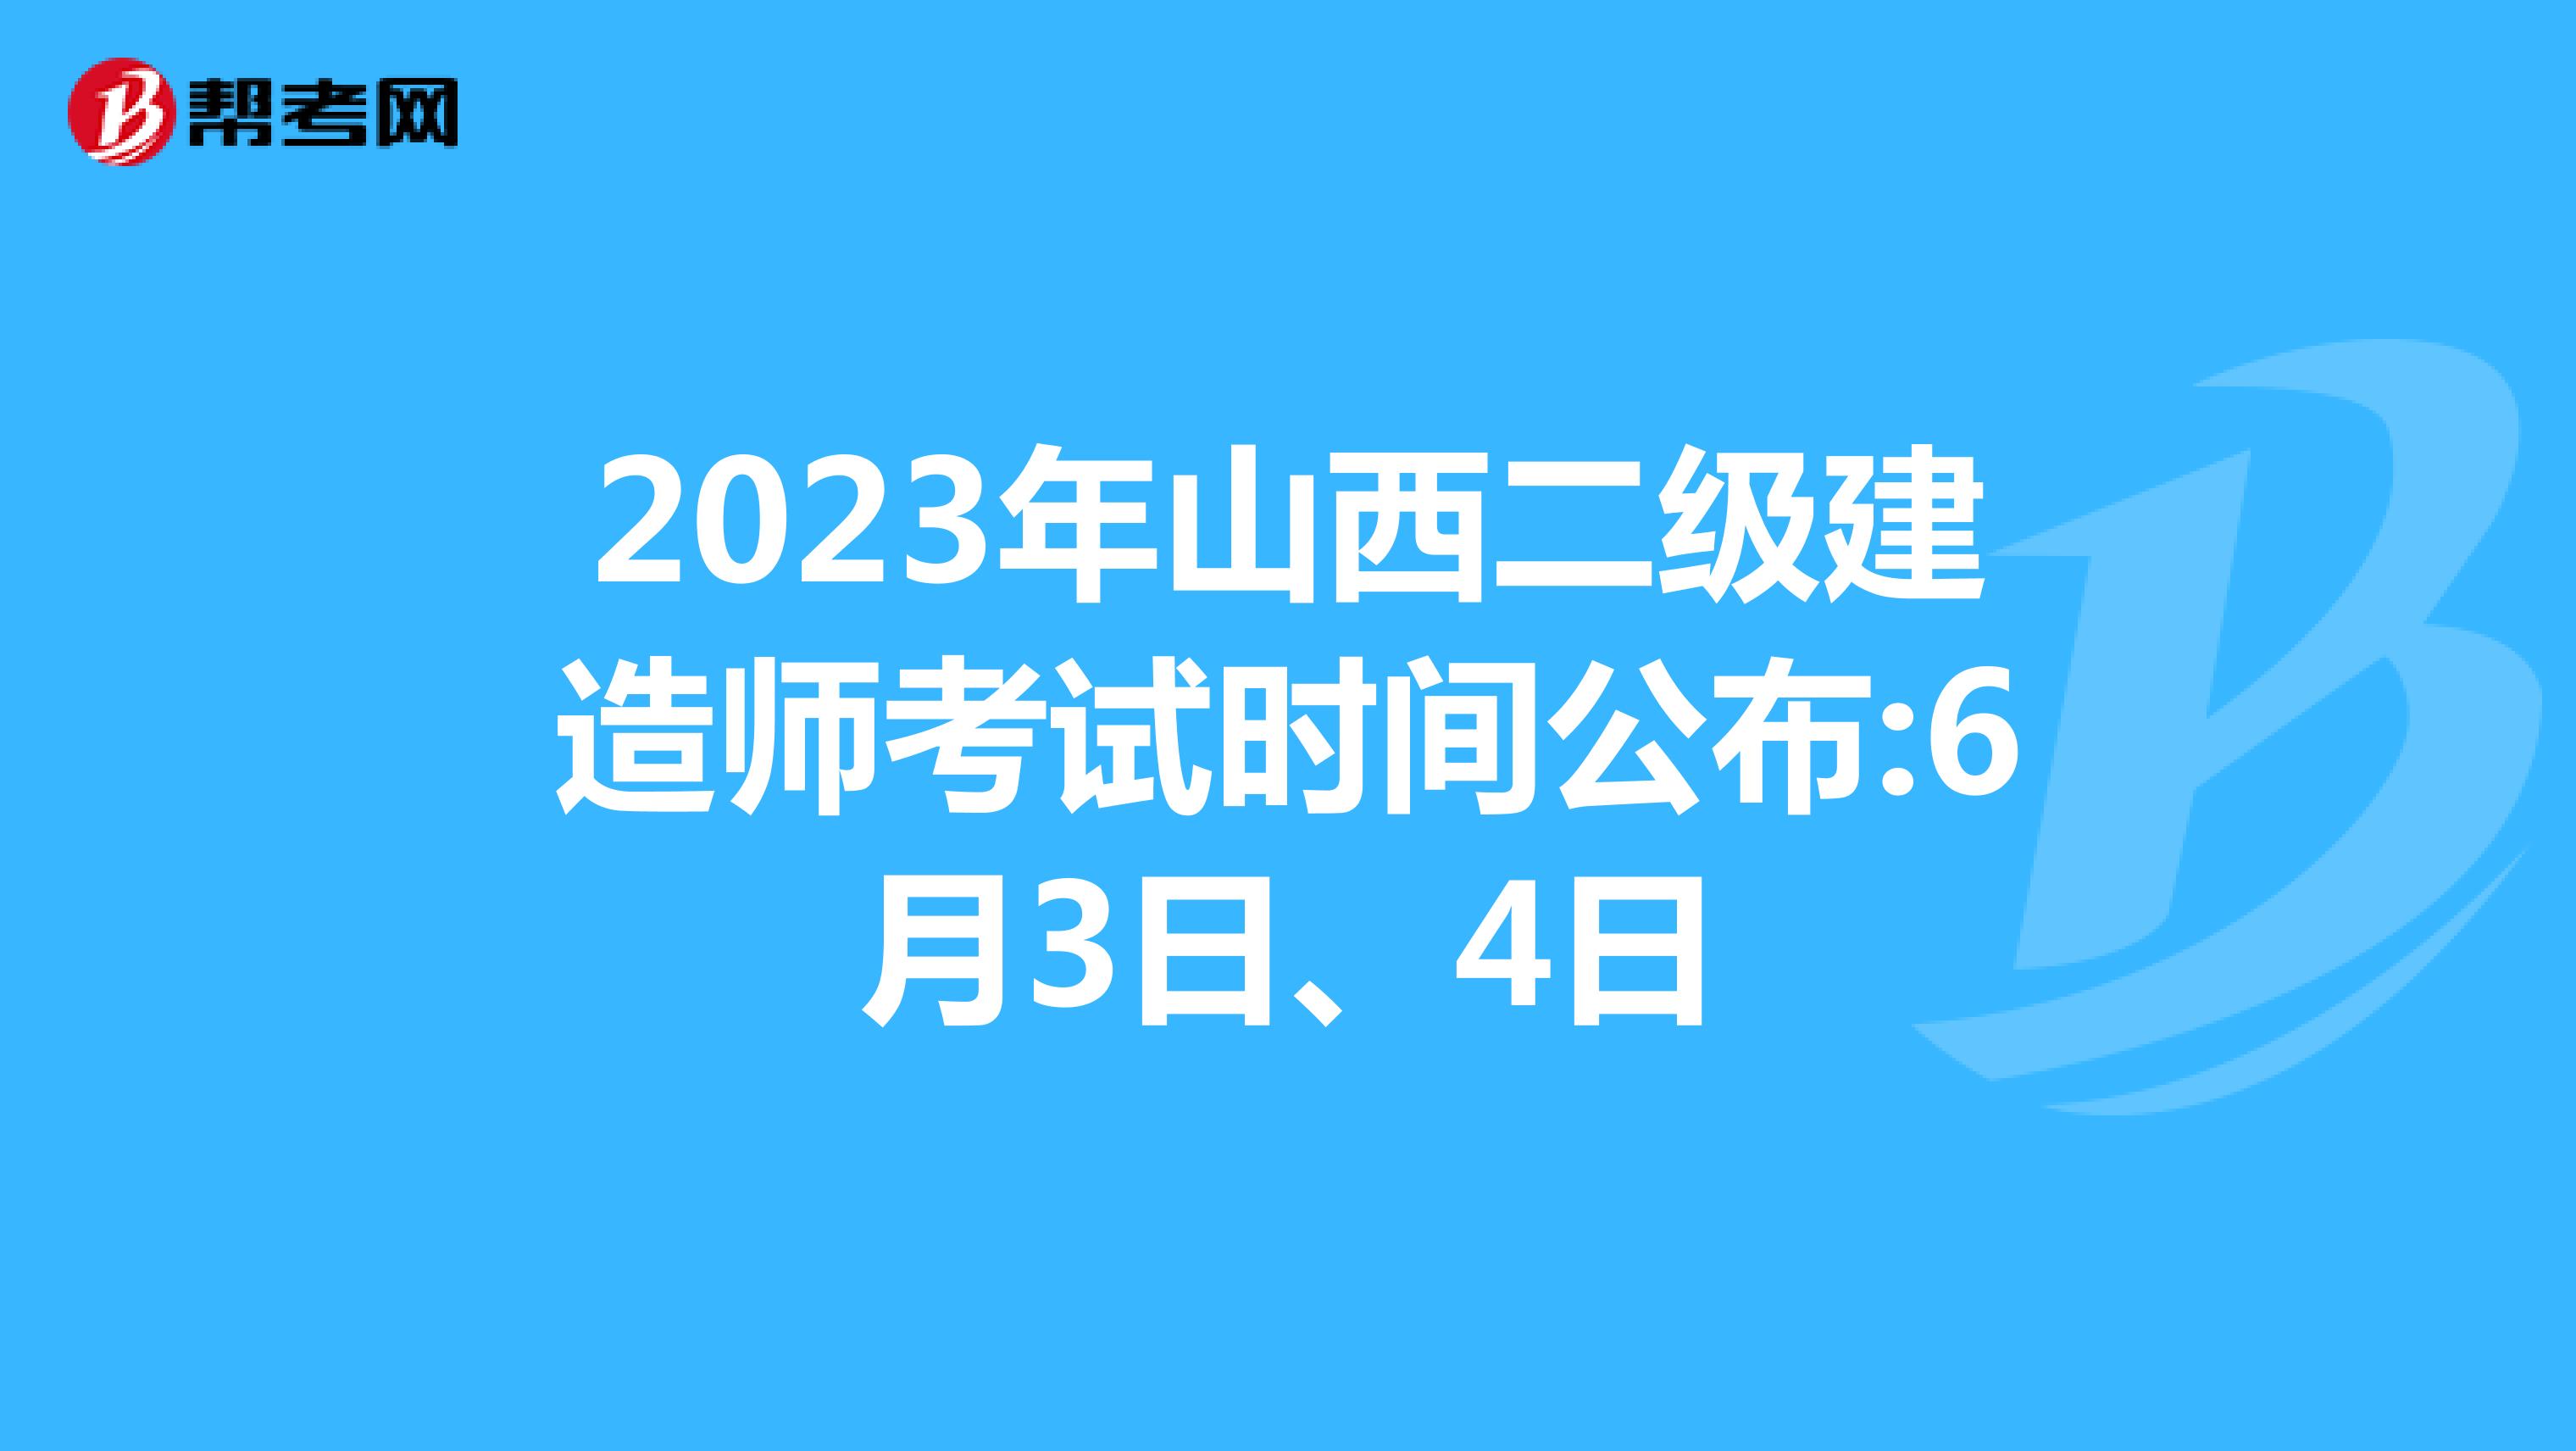 2023年山西二级建造师考试时间公布:6月3日、4日